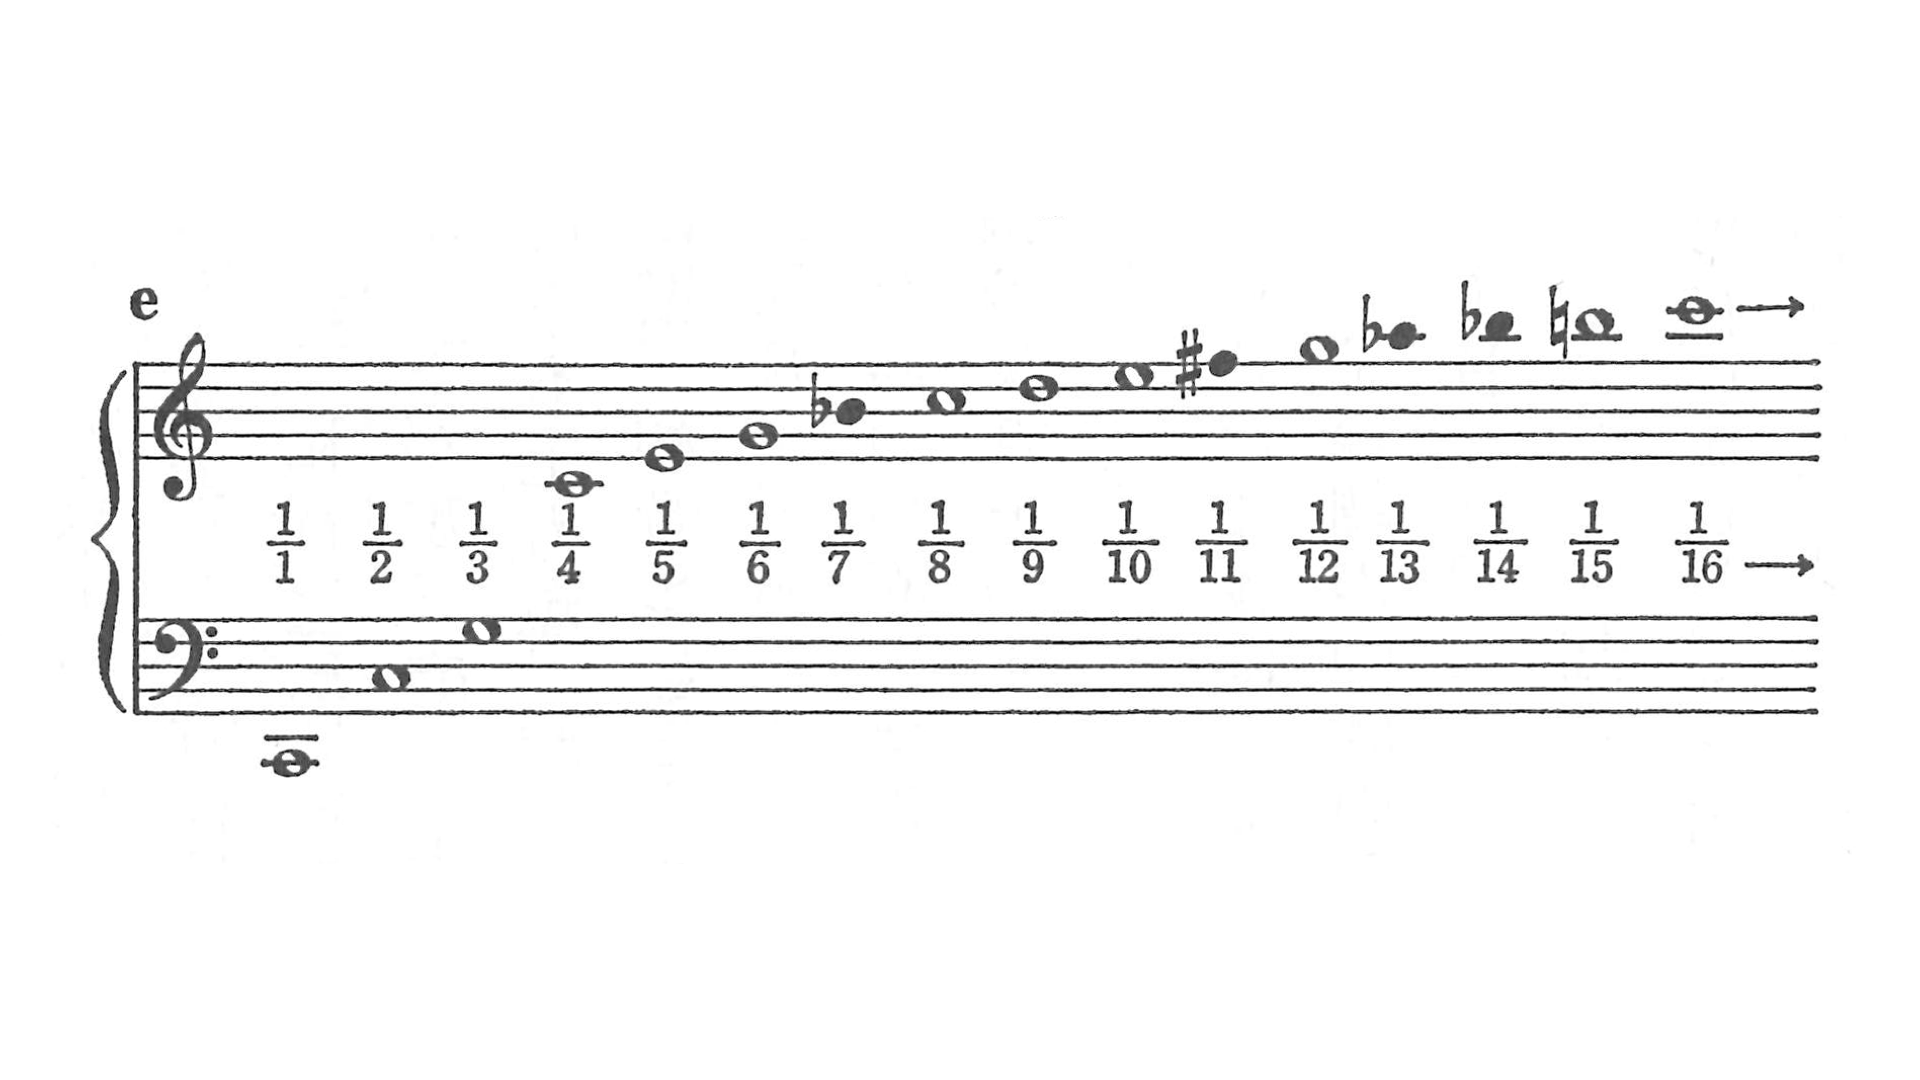 弦の長さ1から1/16までに対応する倍音列の譜面